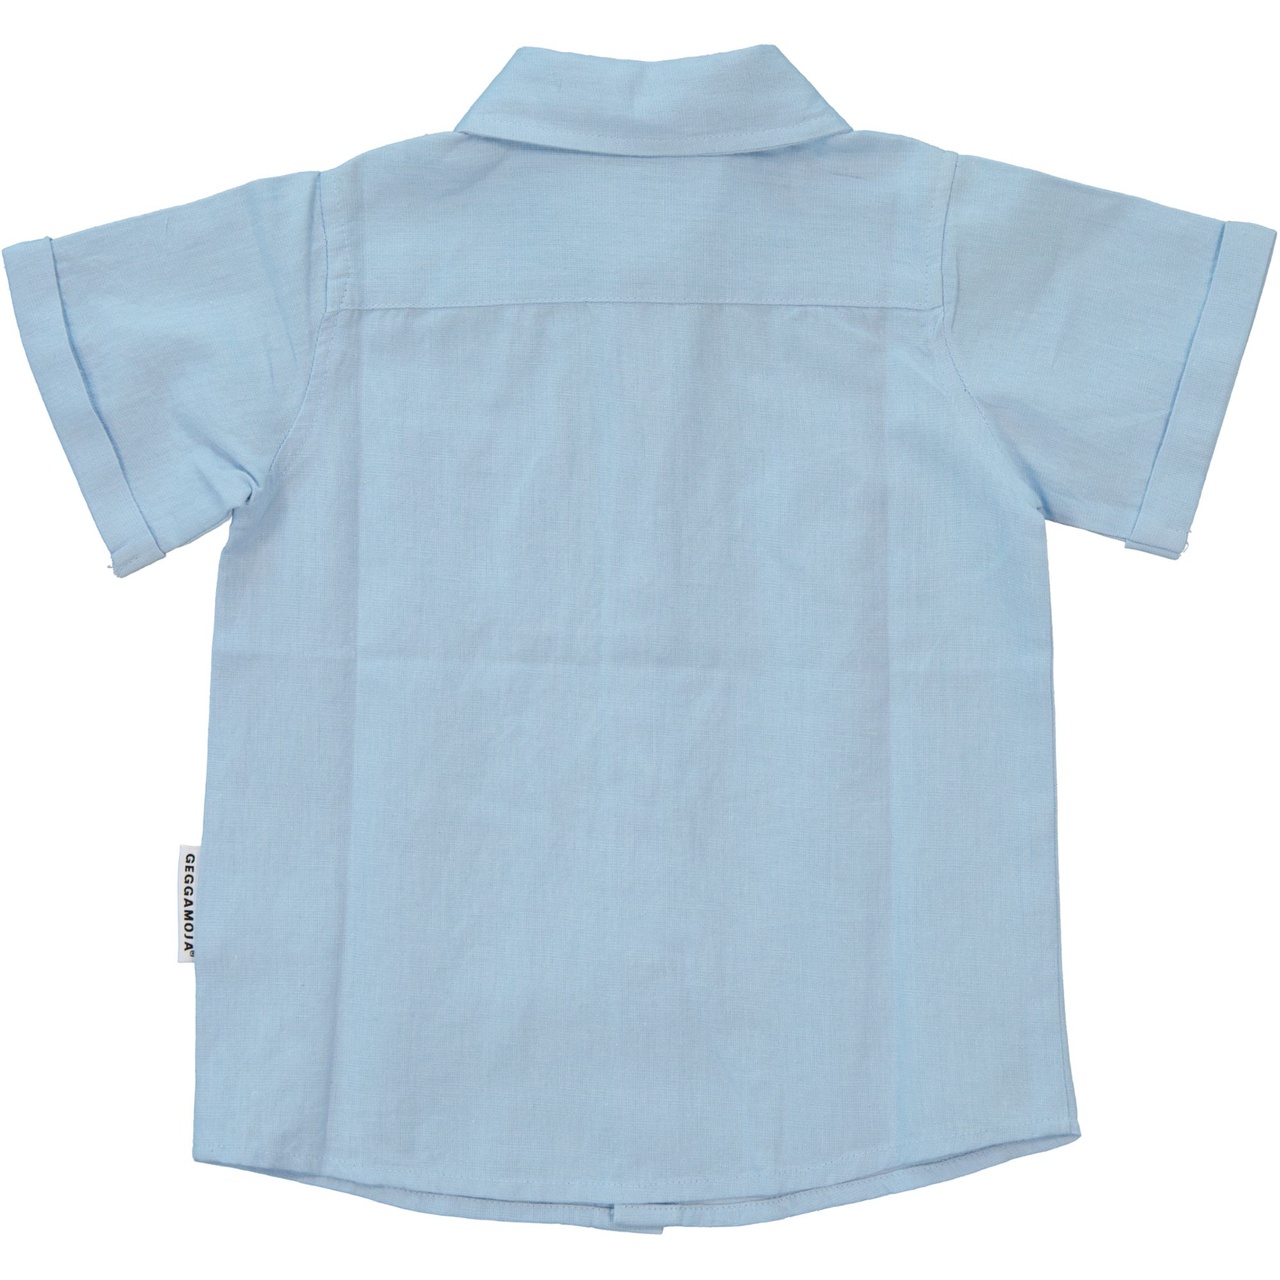 Linnen Shirt S.S Light blue 98/104